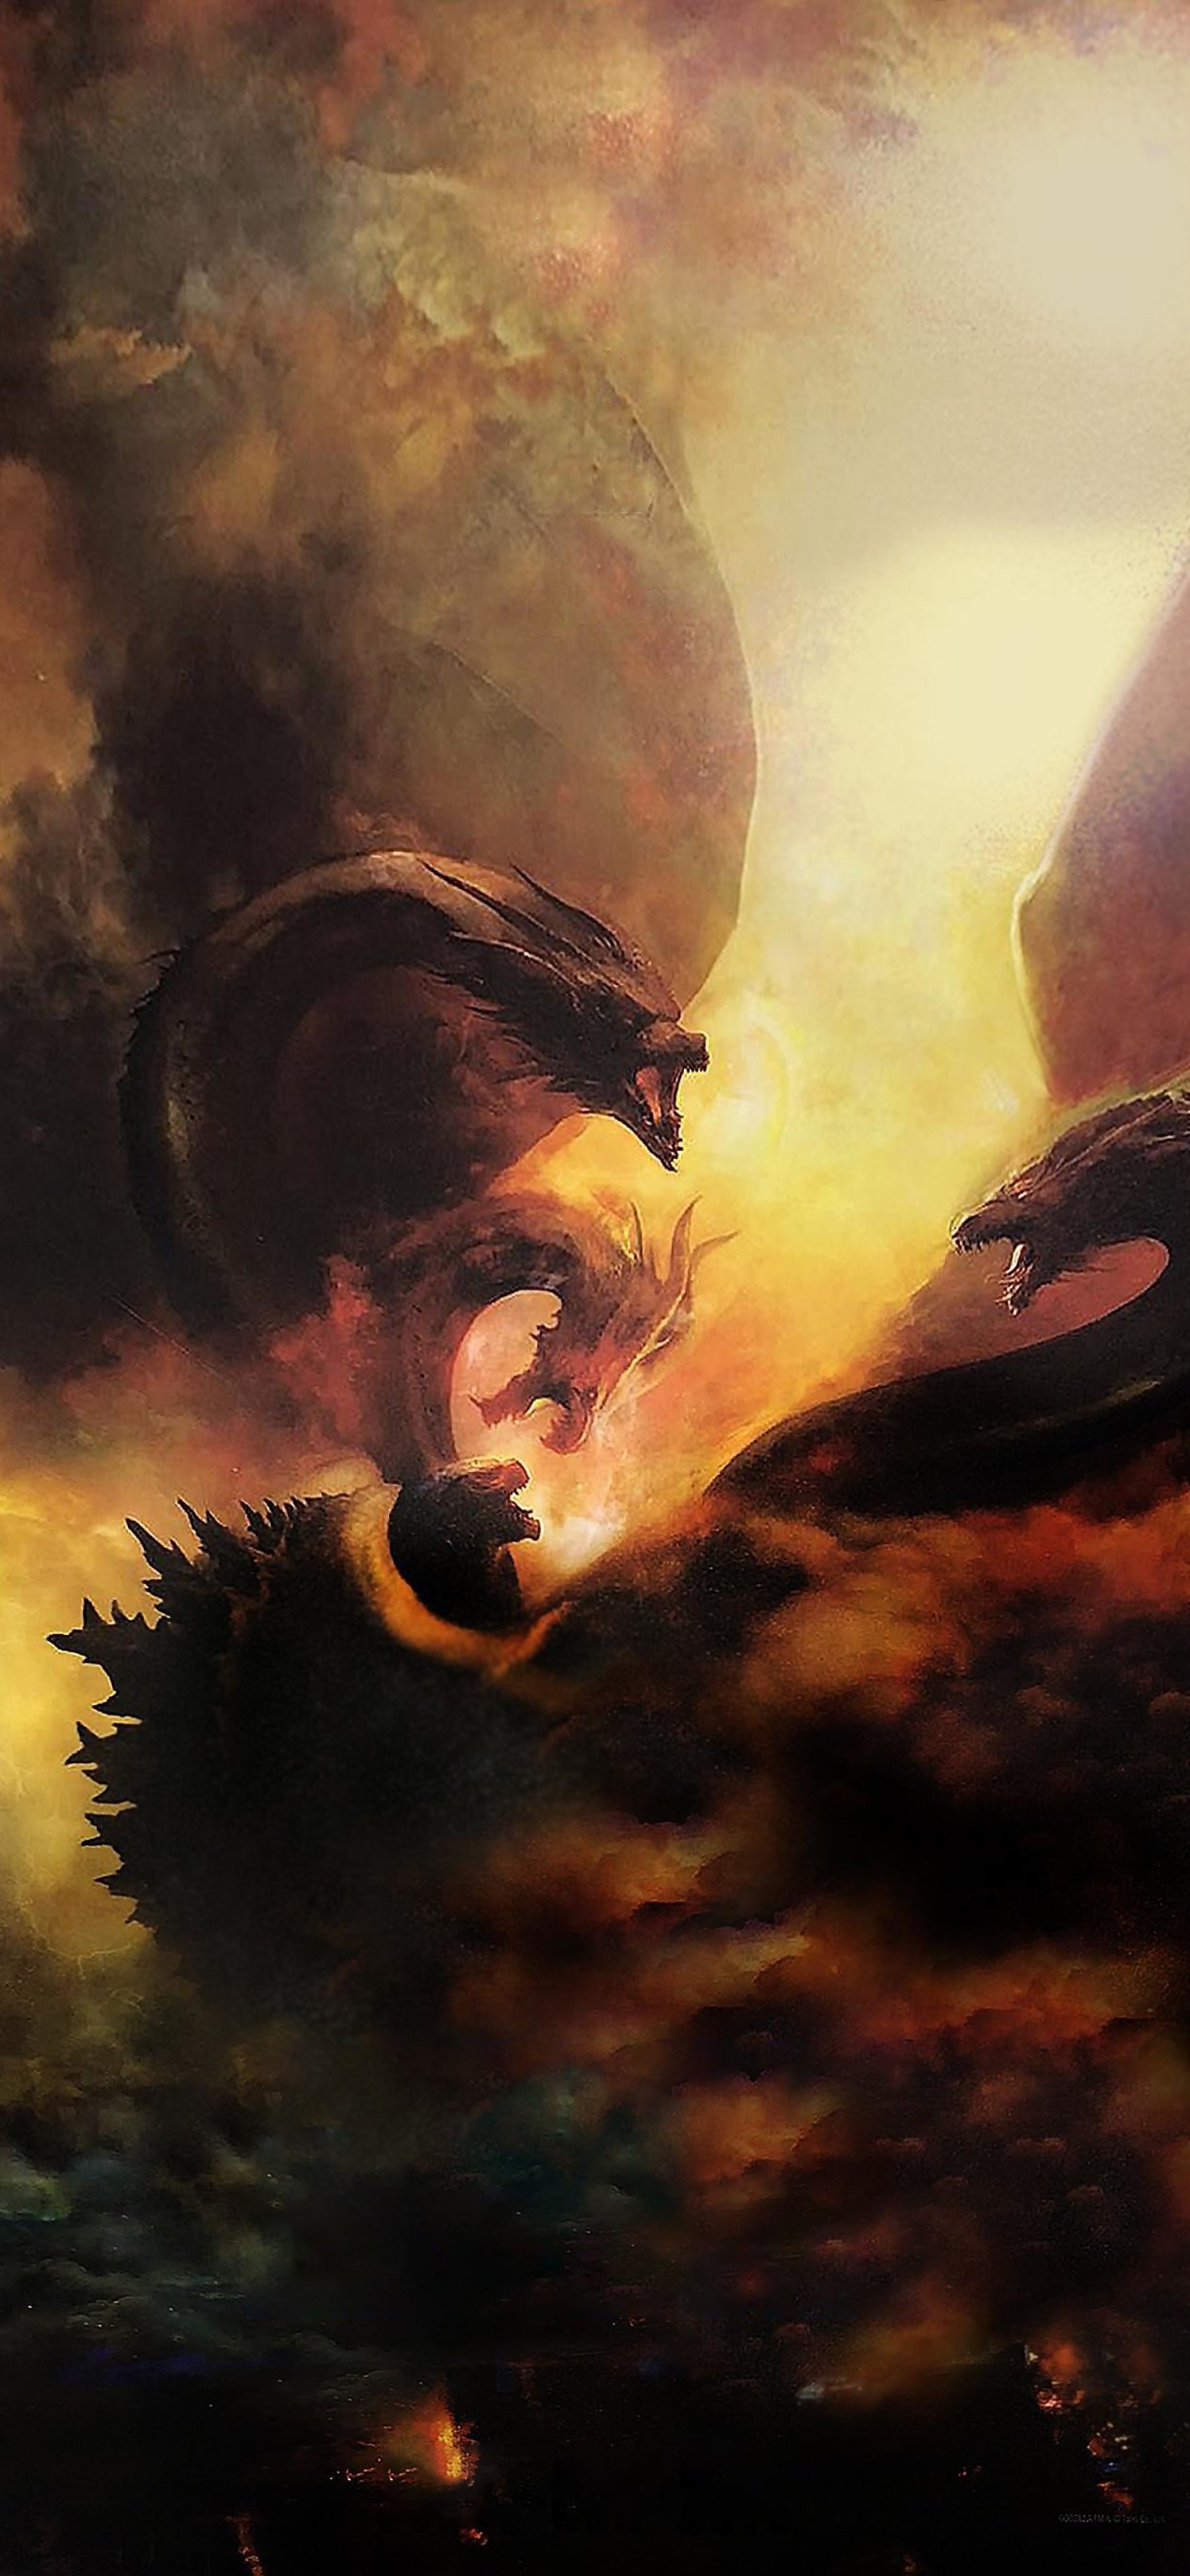 电影哥斯拉2怪兽之王中的三头喷火龙霸气影视手机壁纸套图